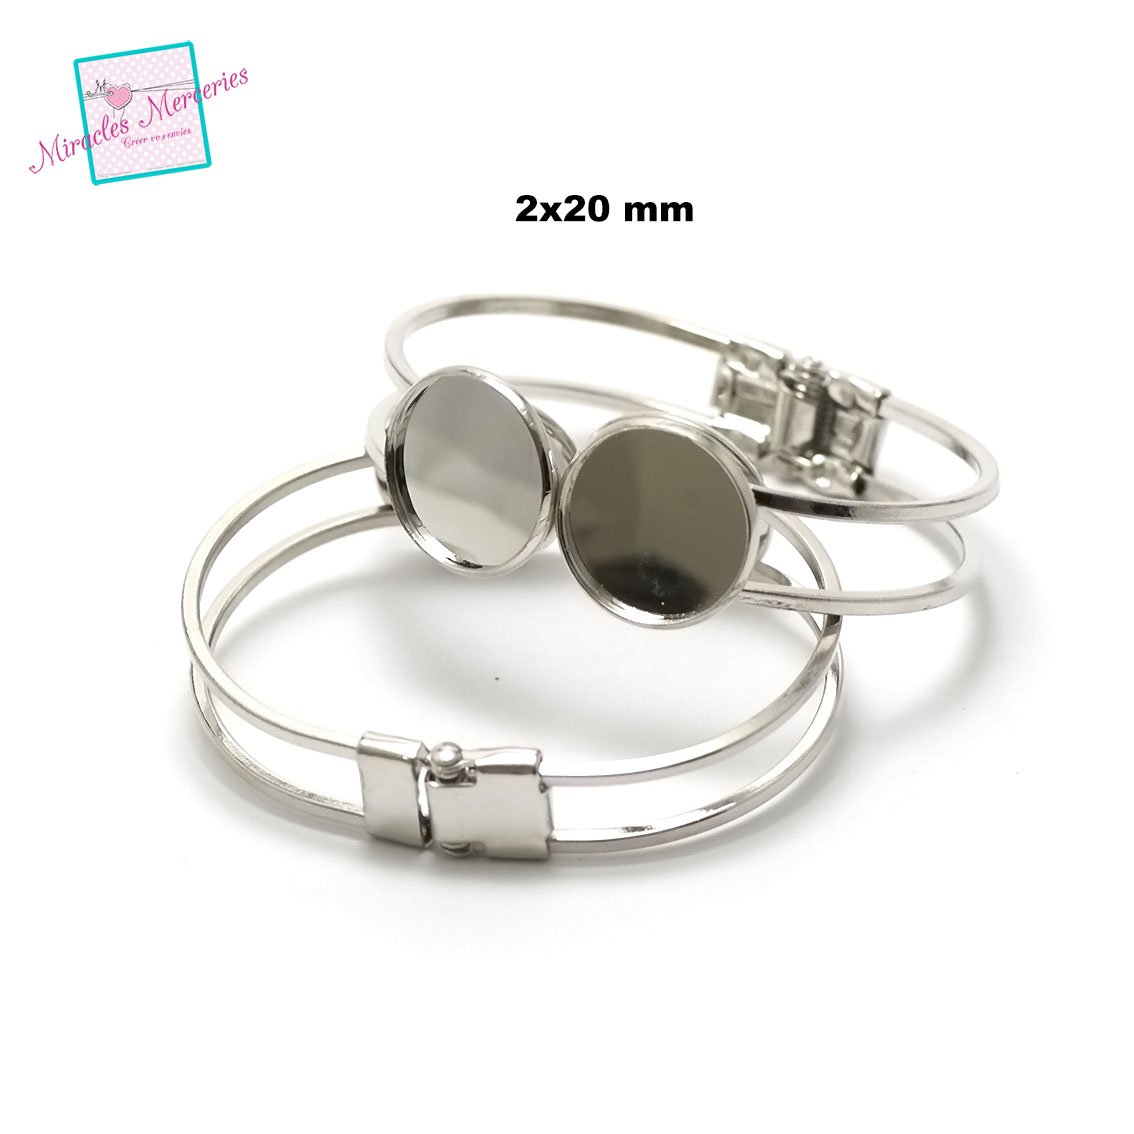 1 bracelet supports cabochon double ronde 20 mm,argenté claire